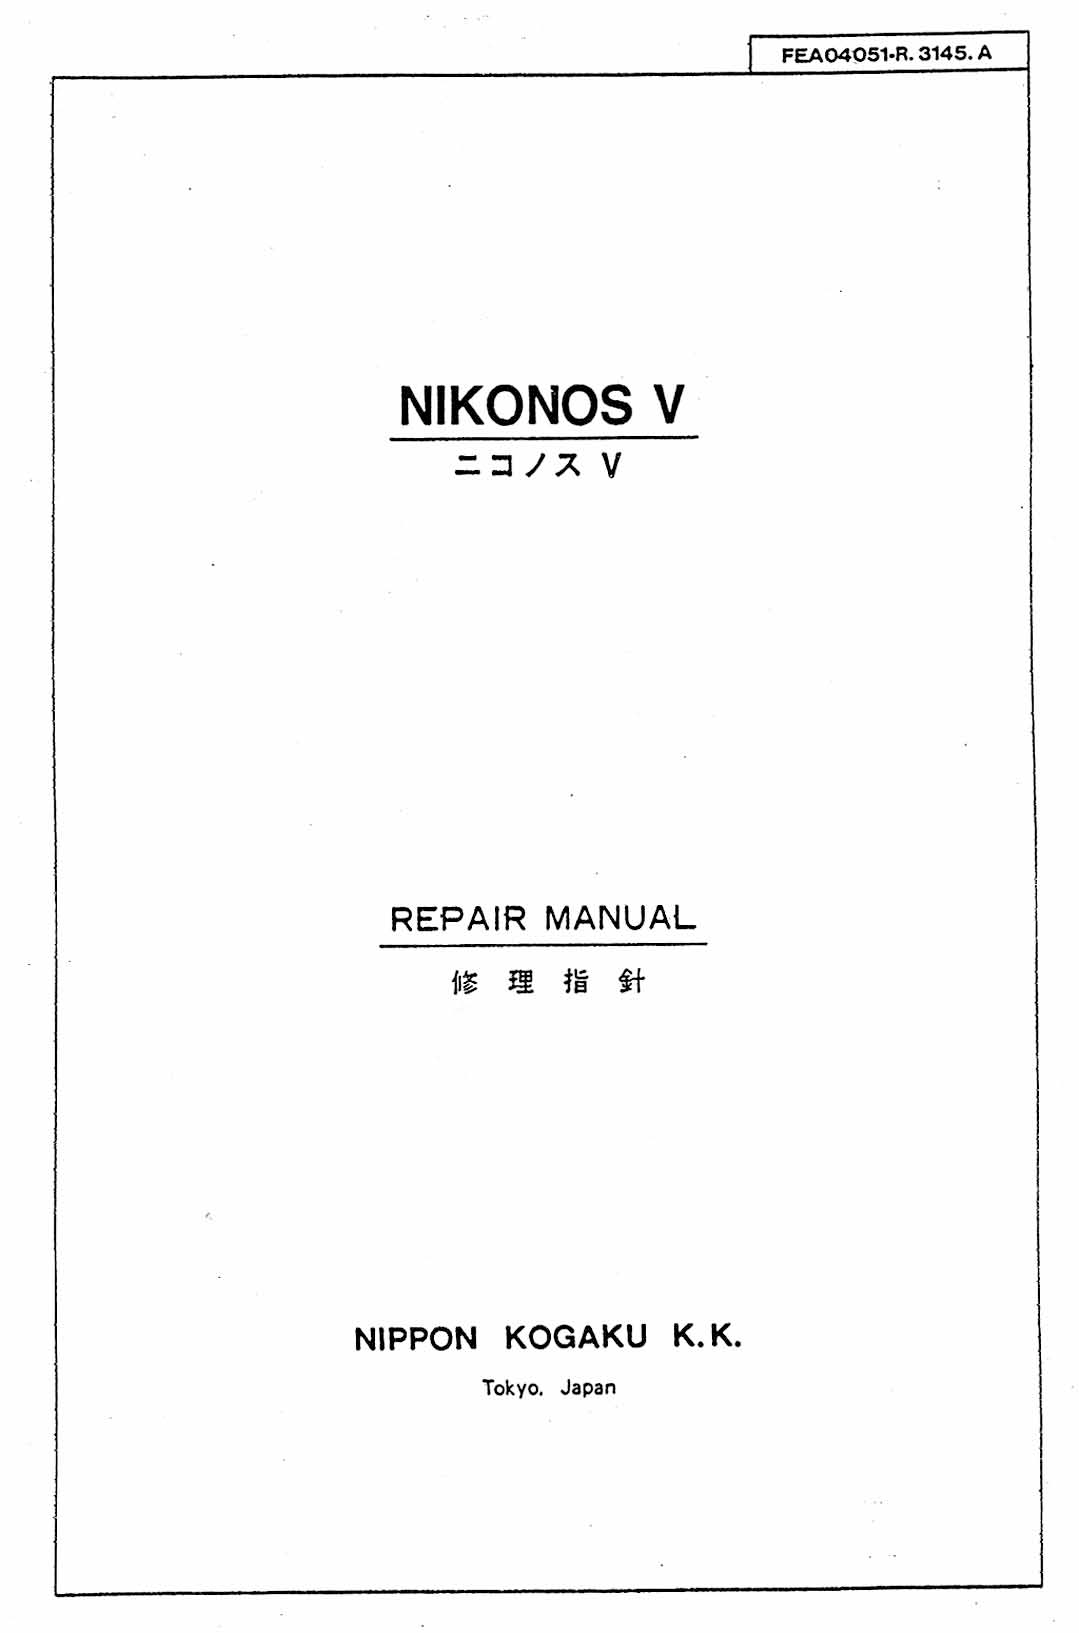 Nikon Nikonos V Repair Manual